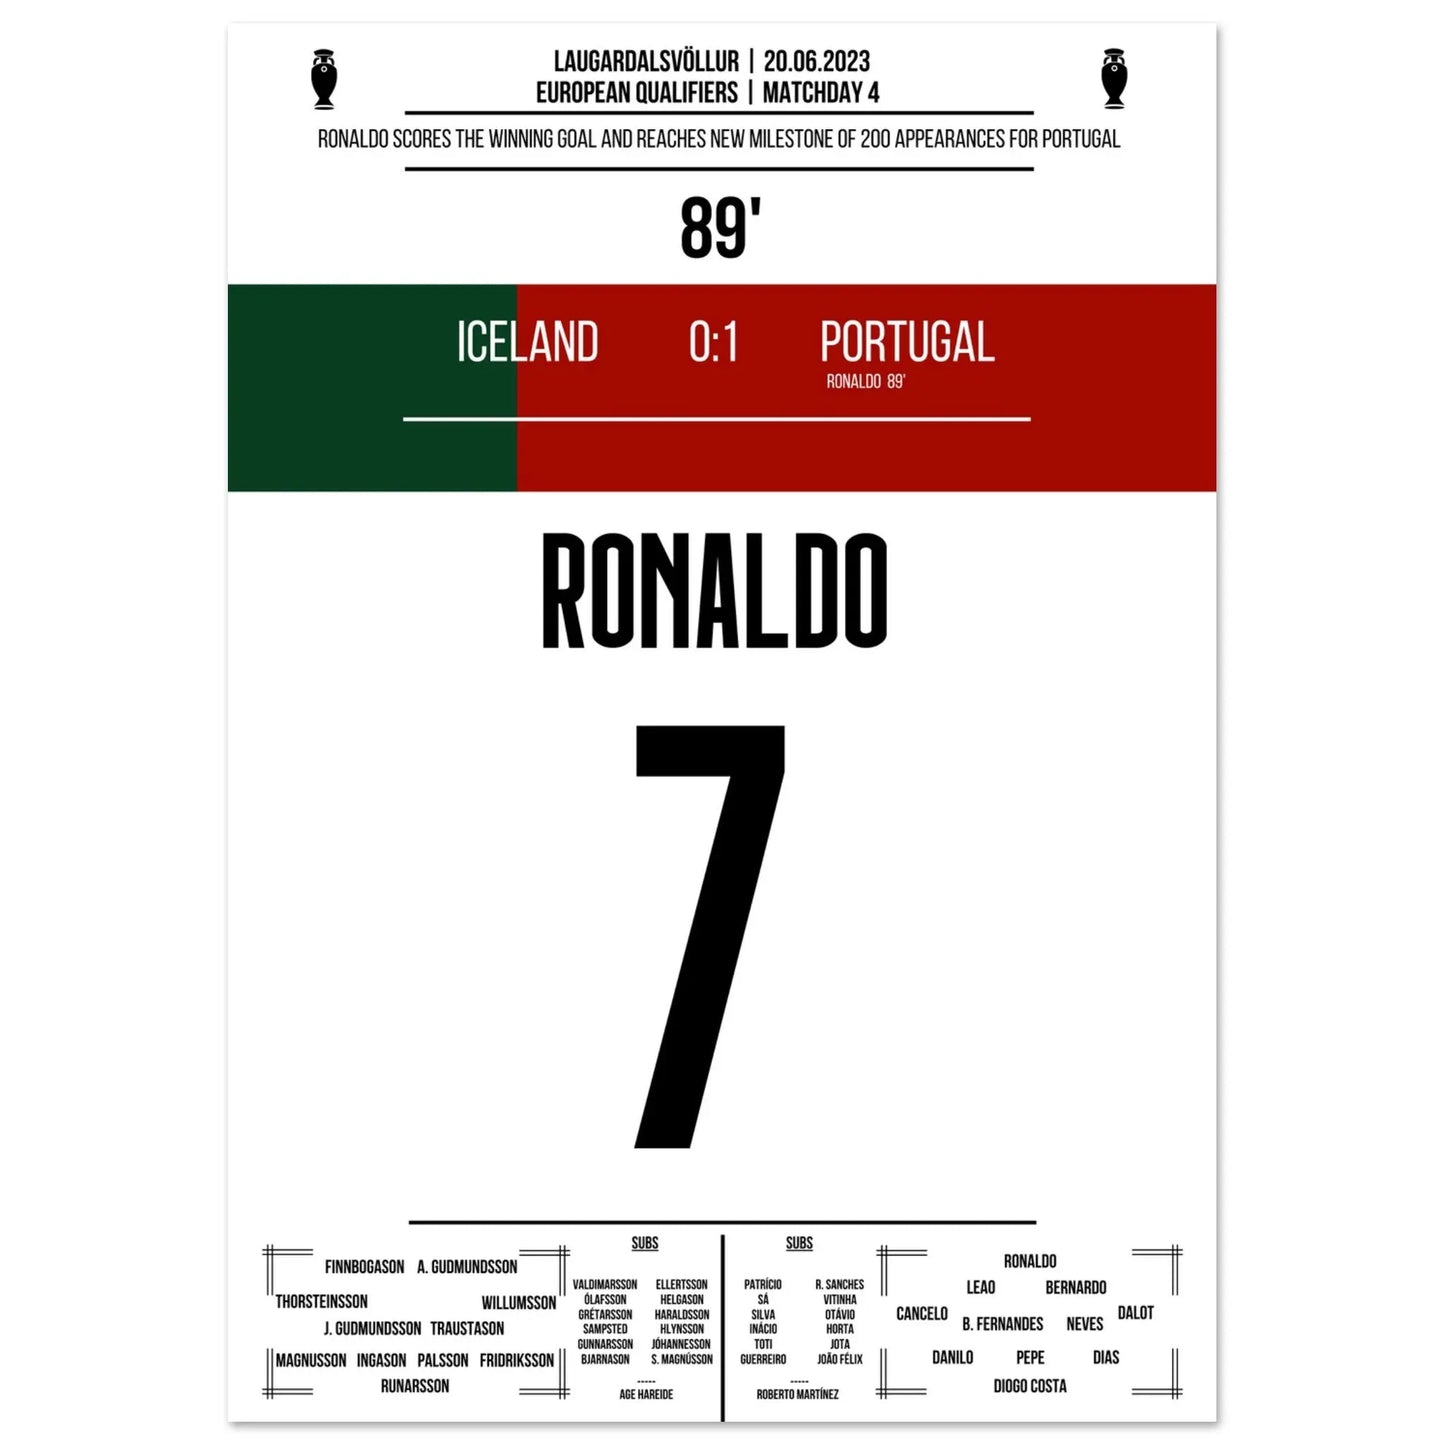 Ronaldo mit Siegtreffer in 200. Spiel für Portugal